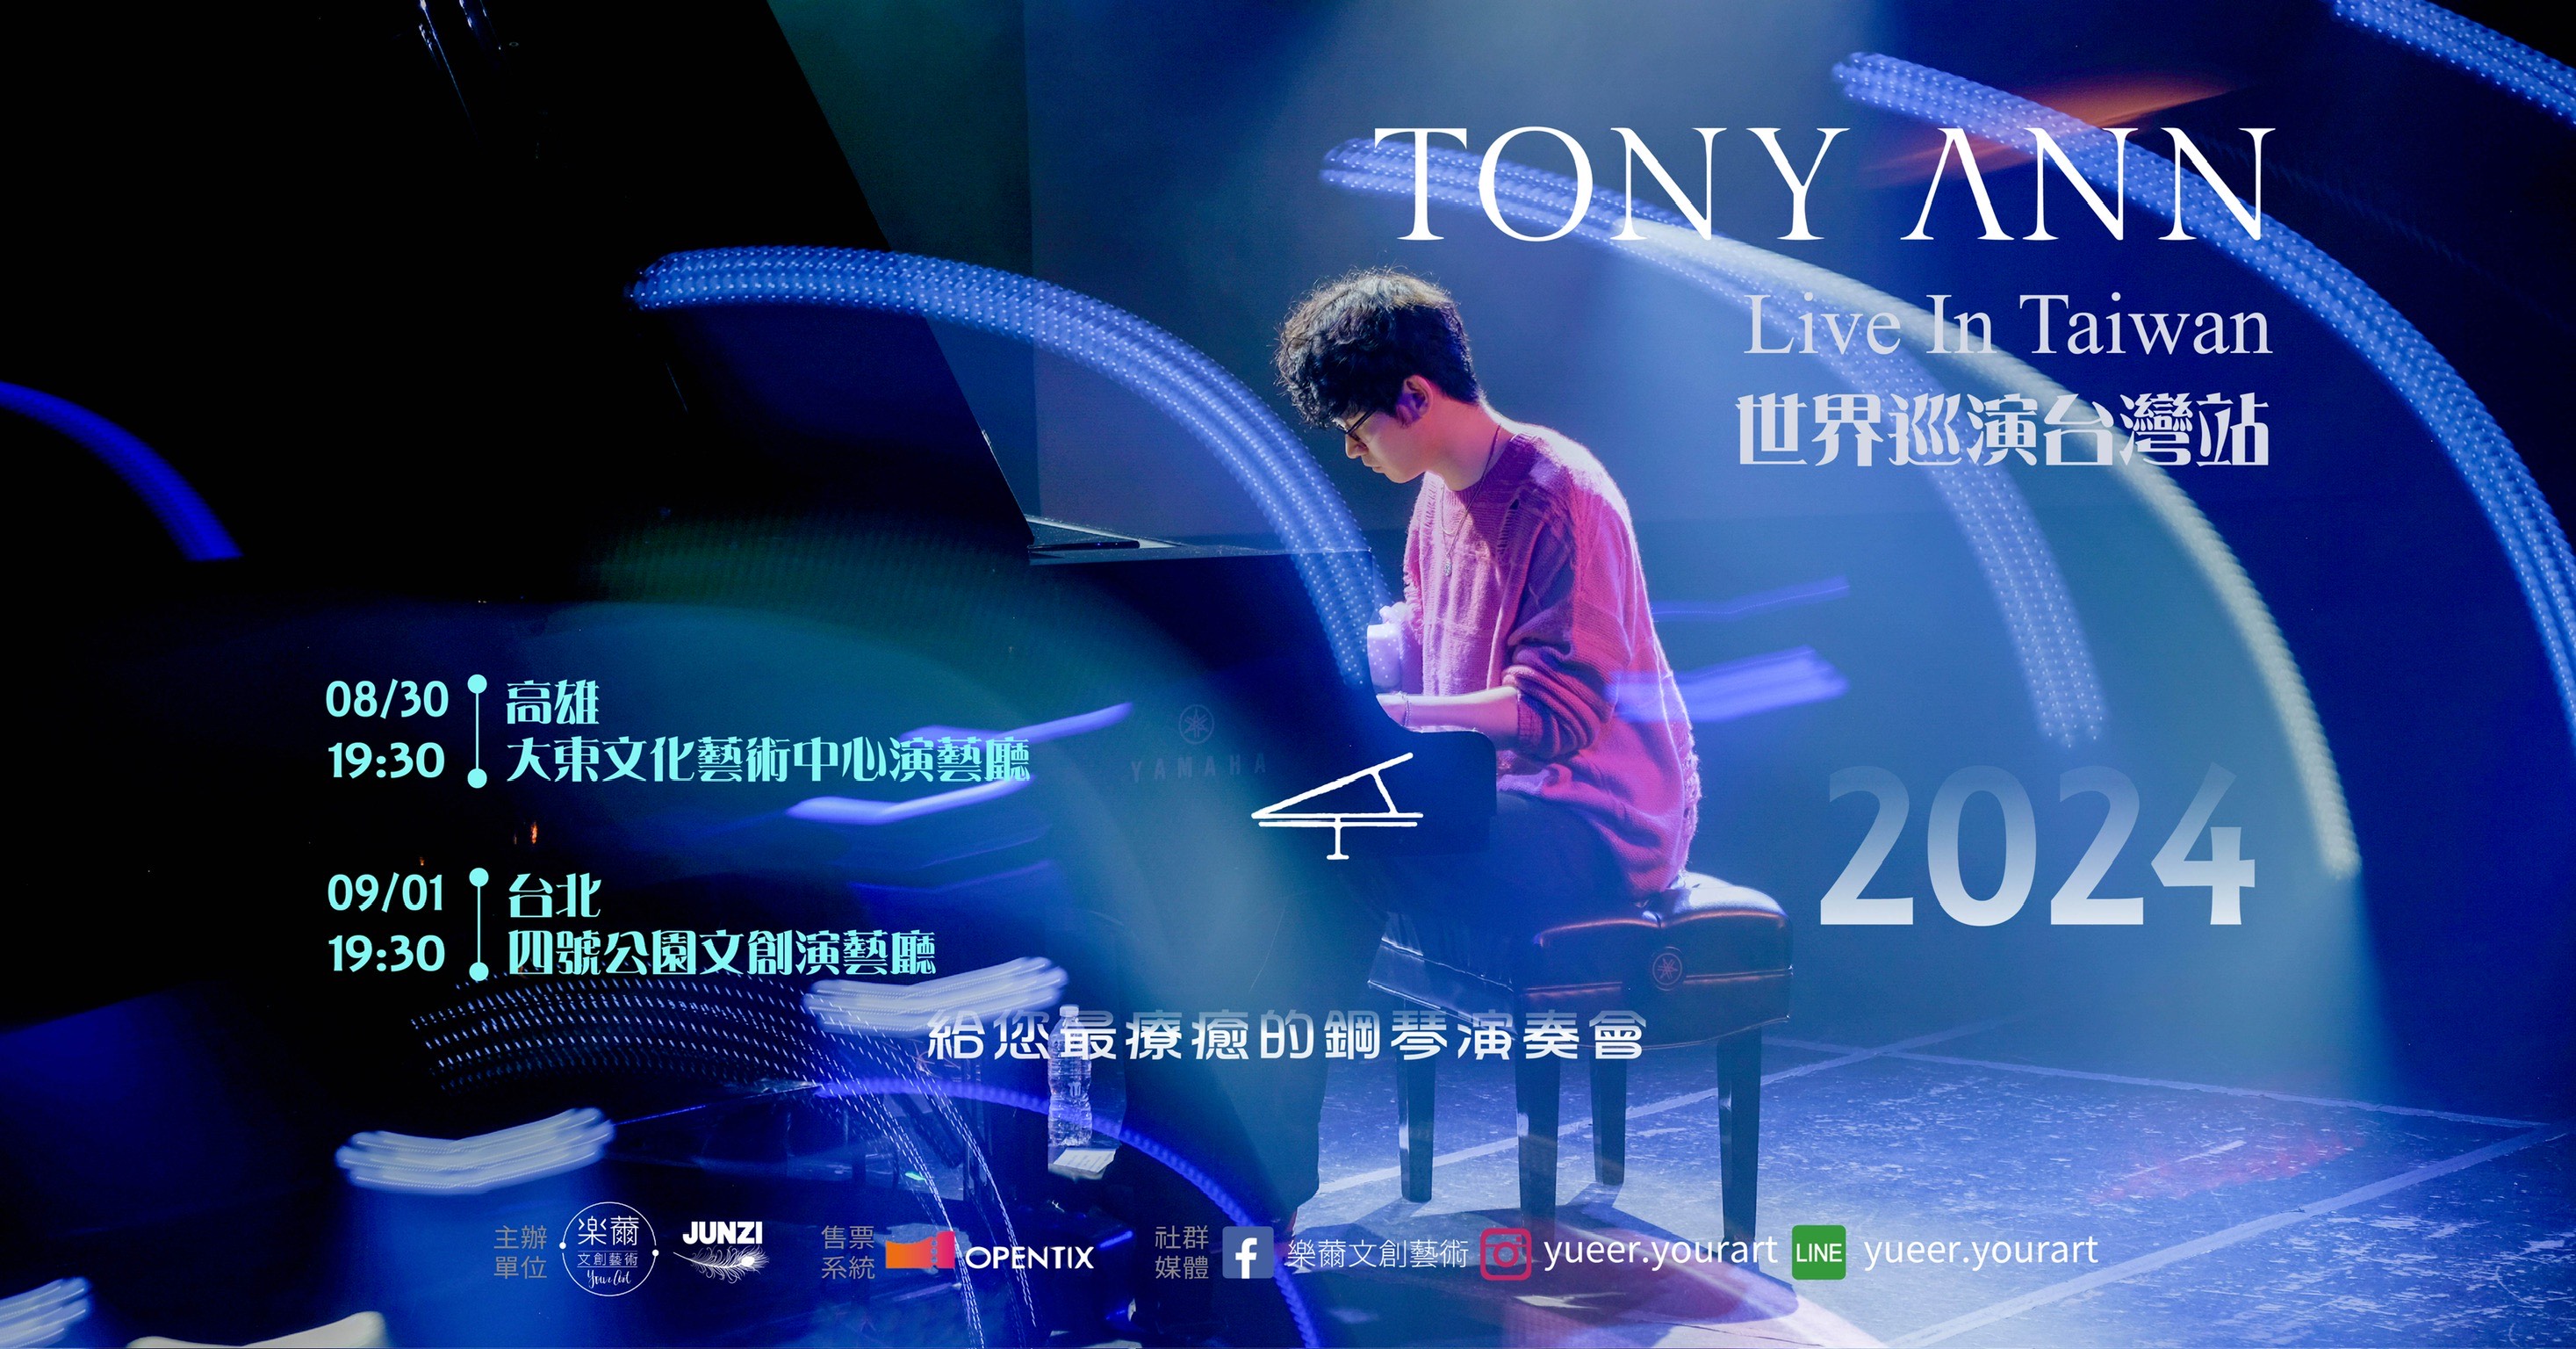 Tony Ann 世界巡演台灣站 | Tony Ann Live in Taiwan